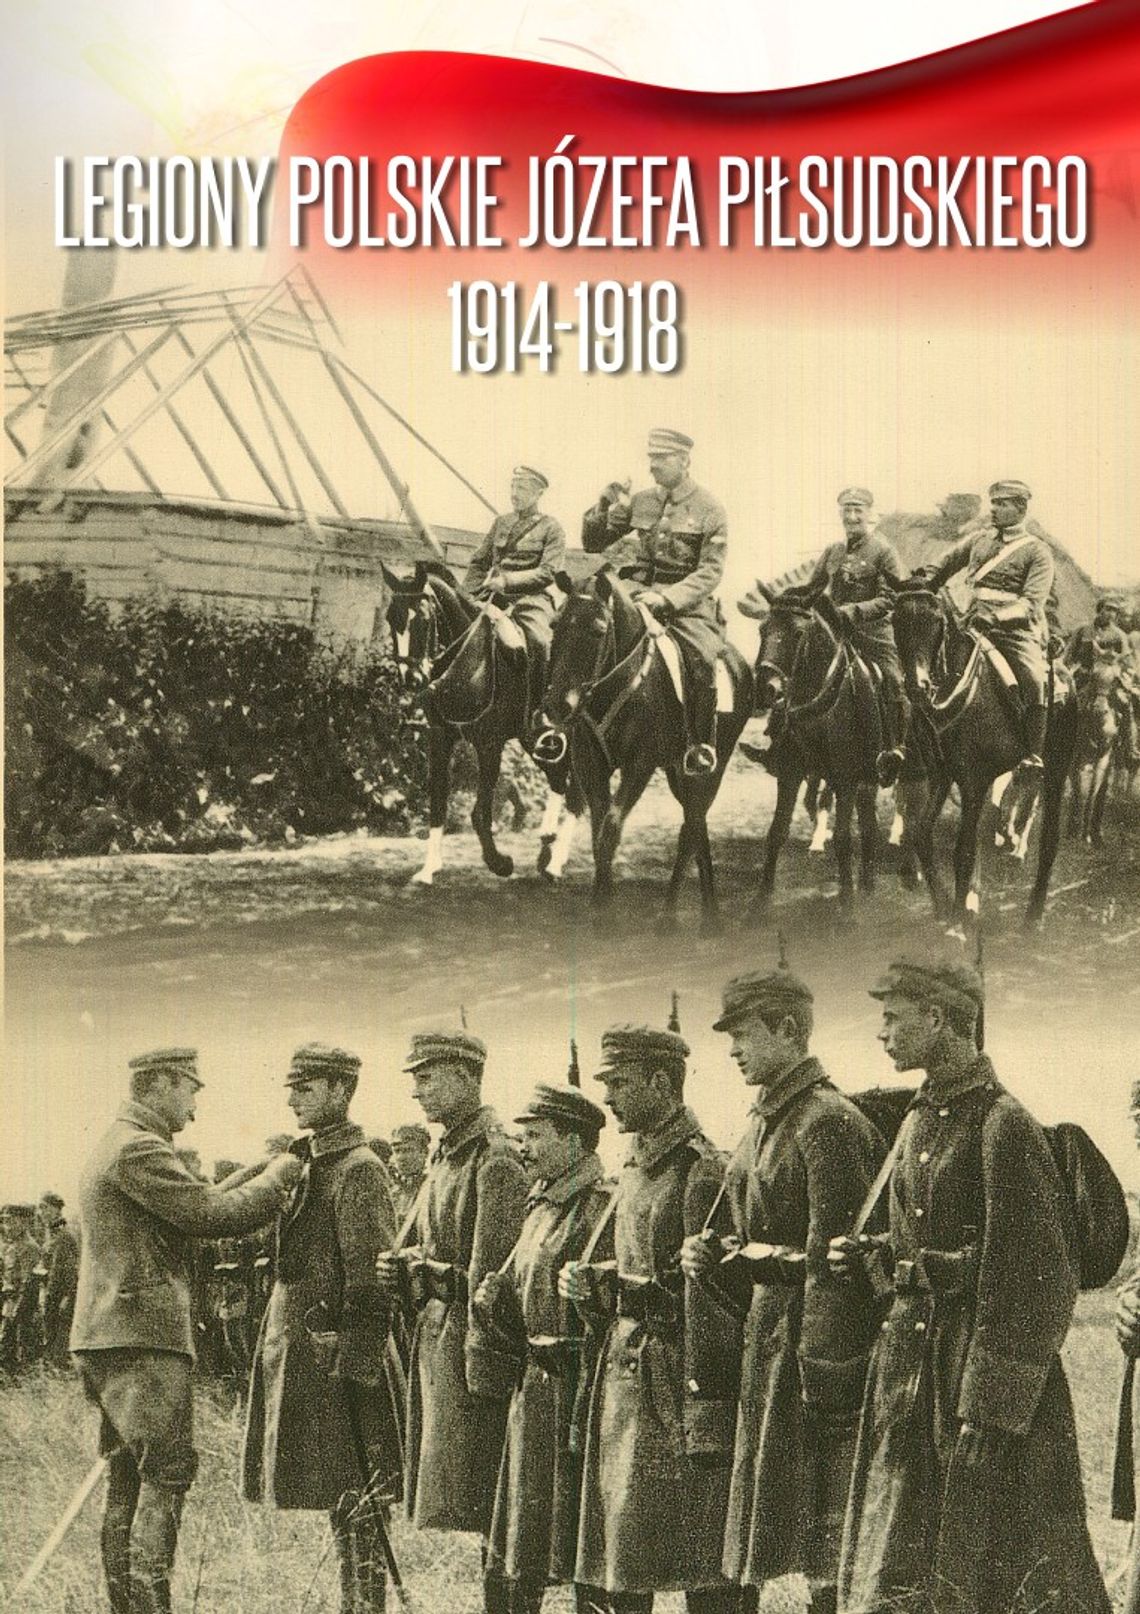 Legiony Polskie Józefa Piłsudskiego 1914-1918